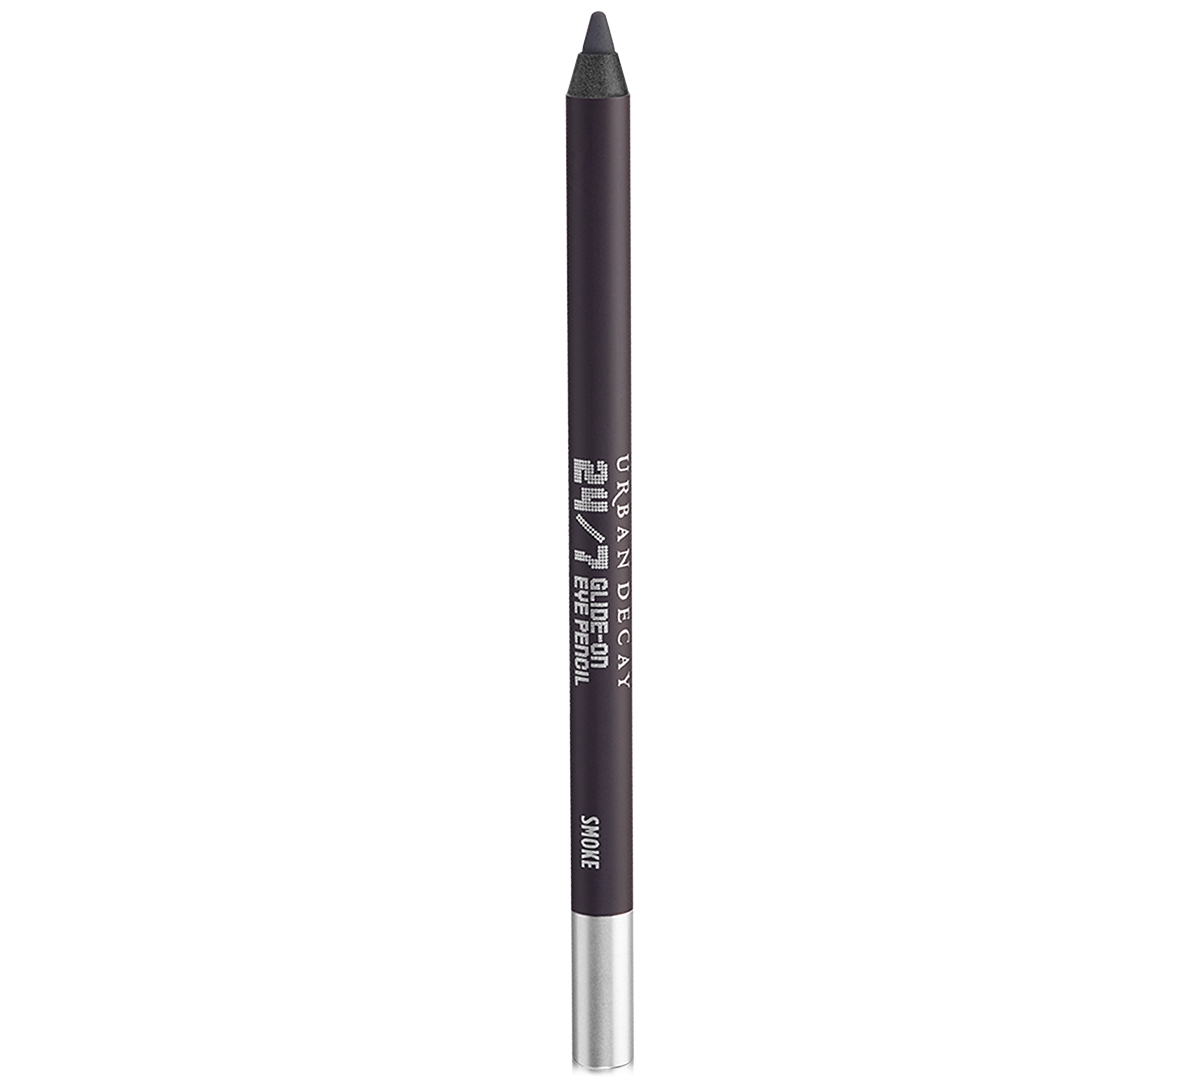 Urban Decay 24/7 Glide-on Waterproof Eyeliner Pencil In Smoke (deepest Matte Gray)